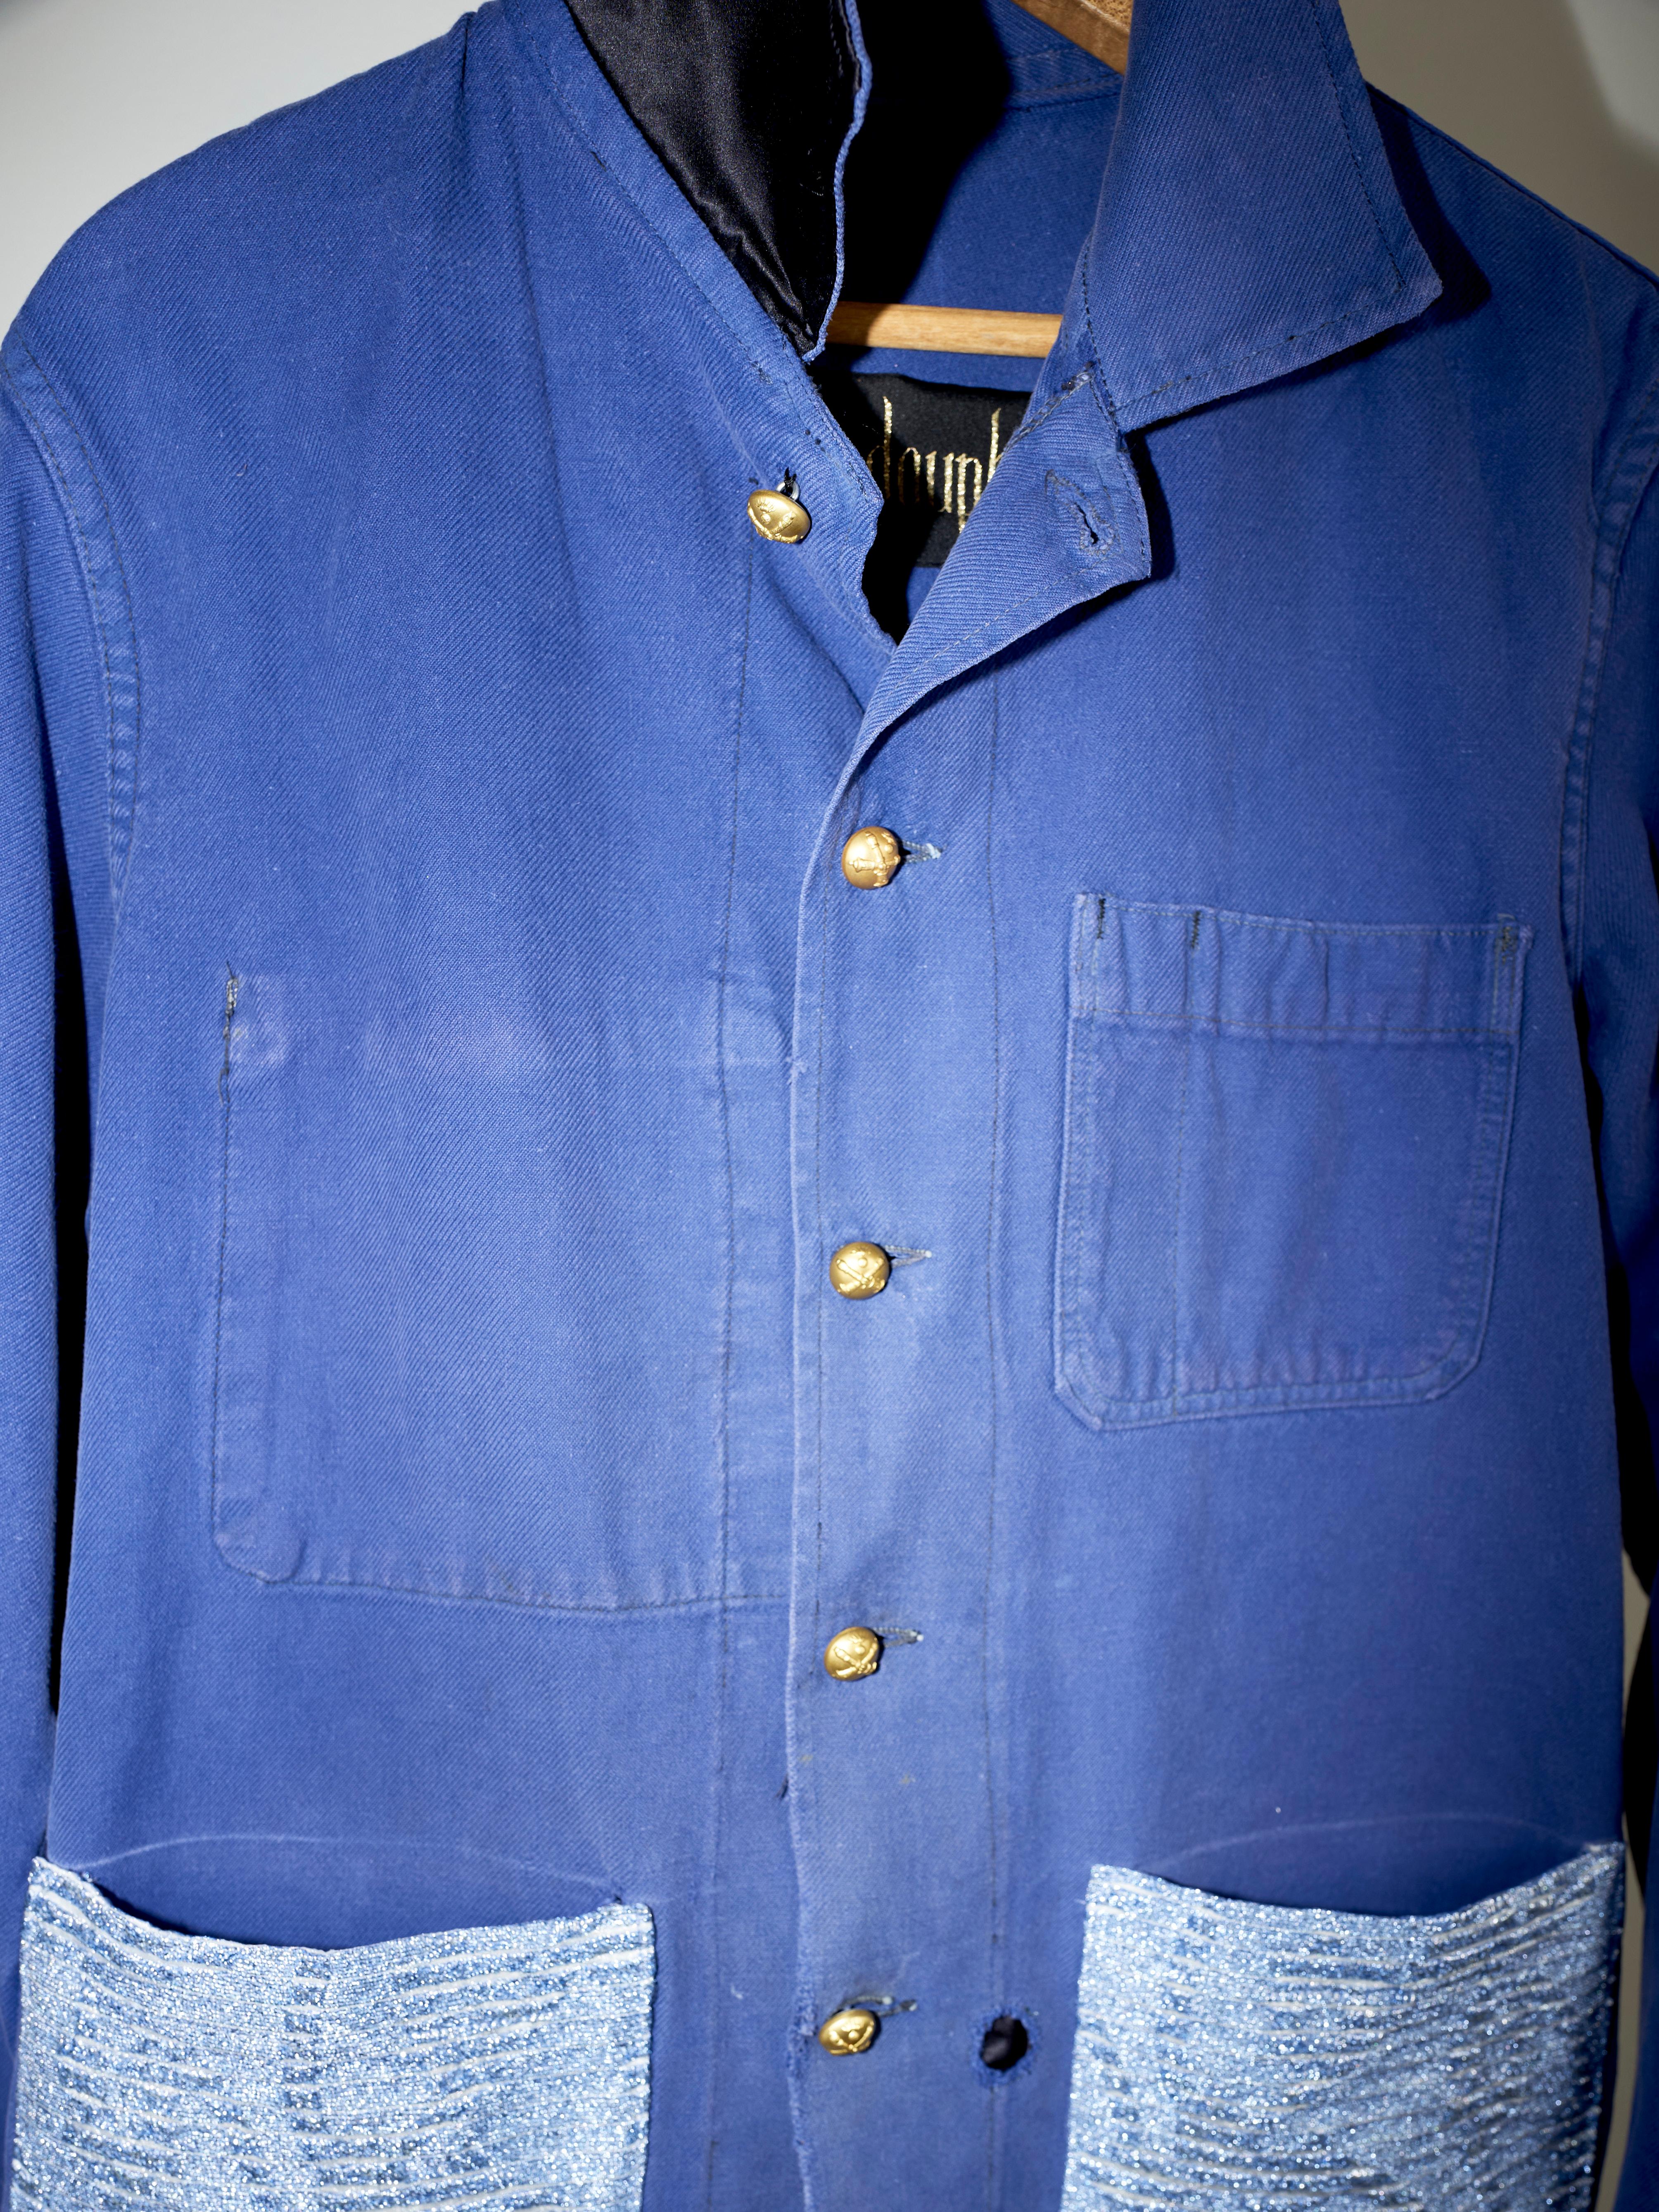 Embellished Fringe Jacket Blue Cotton French Work Wear  Small 2